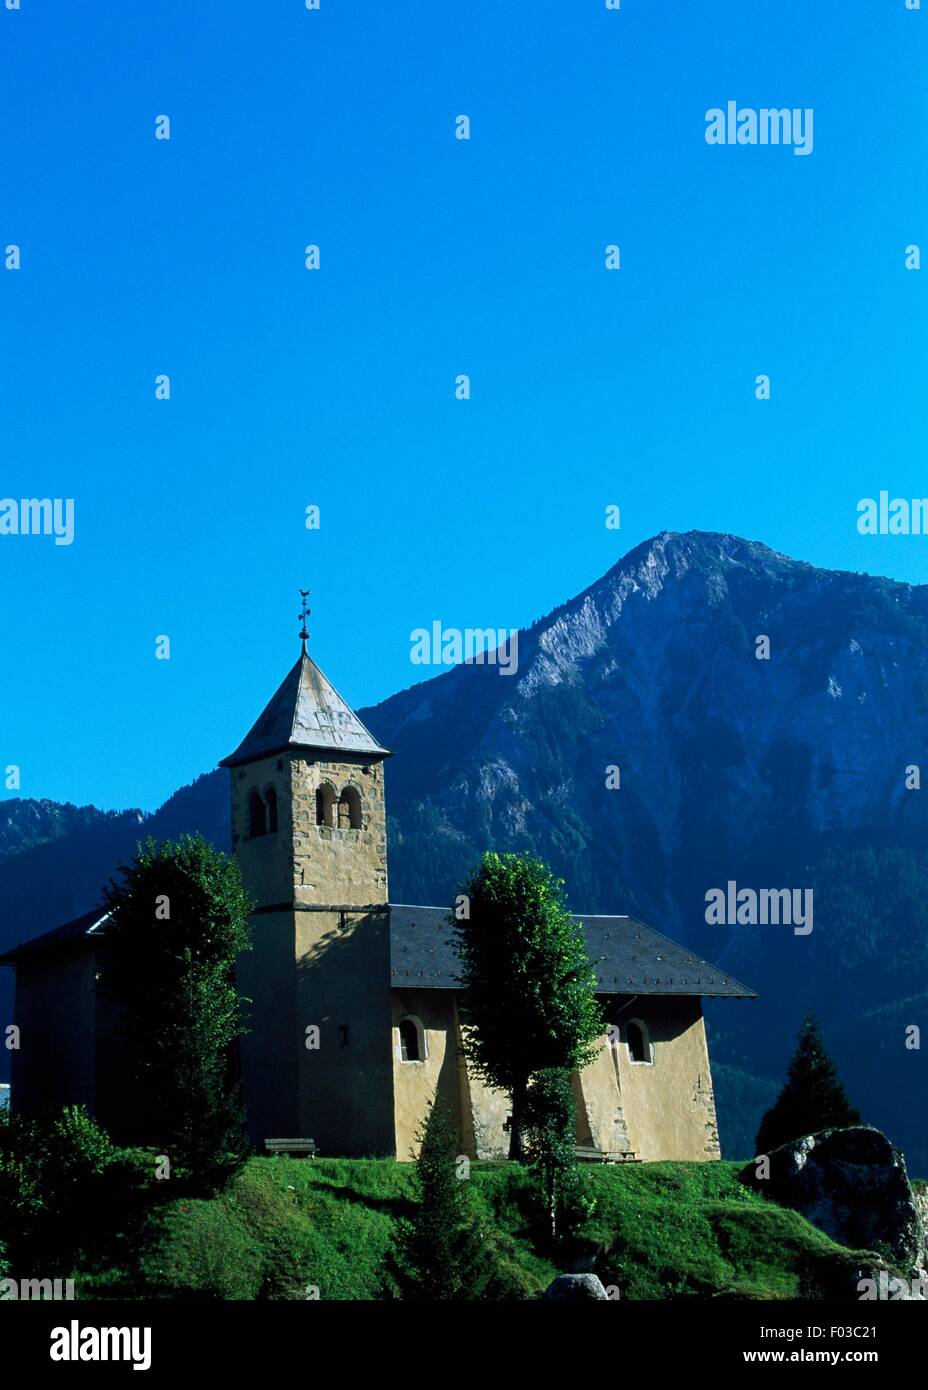 Church at Champagny-En-Vanoise, Vanoise National Park (Parc national de la Vanoise), Savoie, France. Stock Photo